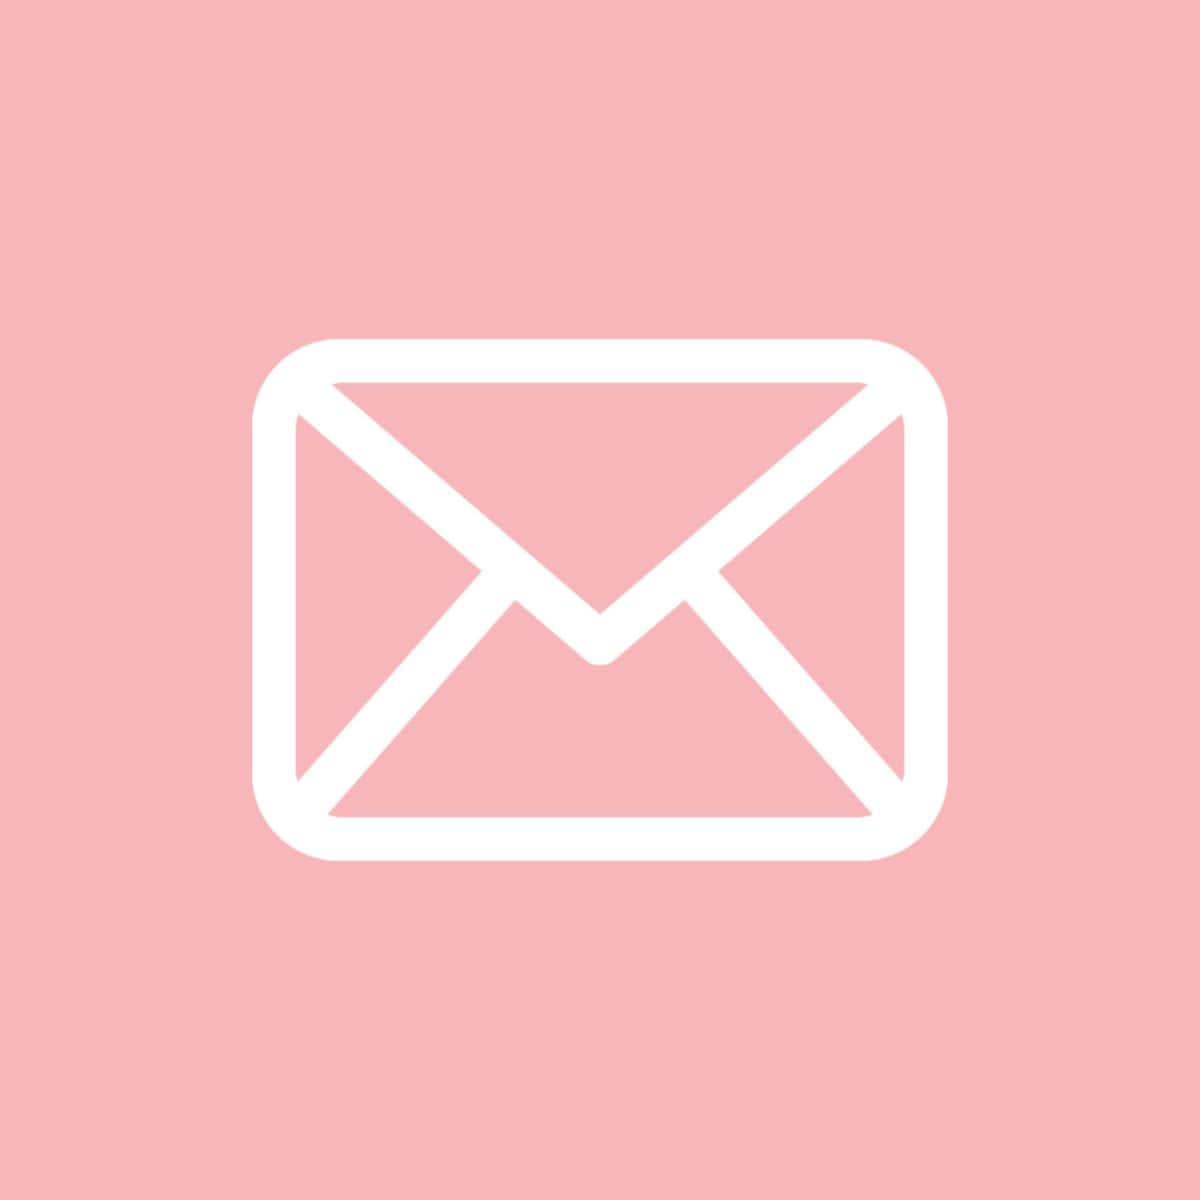 Haltensie Ihre E-mail-kommunikation Mit Freunden Und Familie Mit Gmail Organisiert.